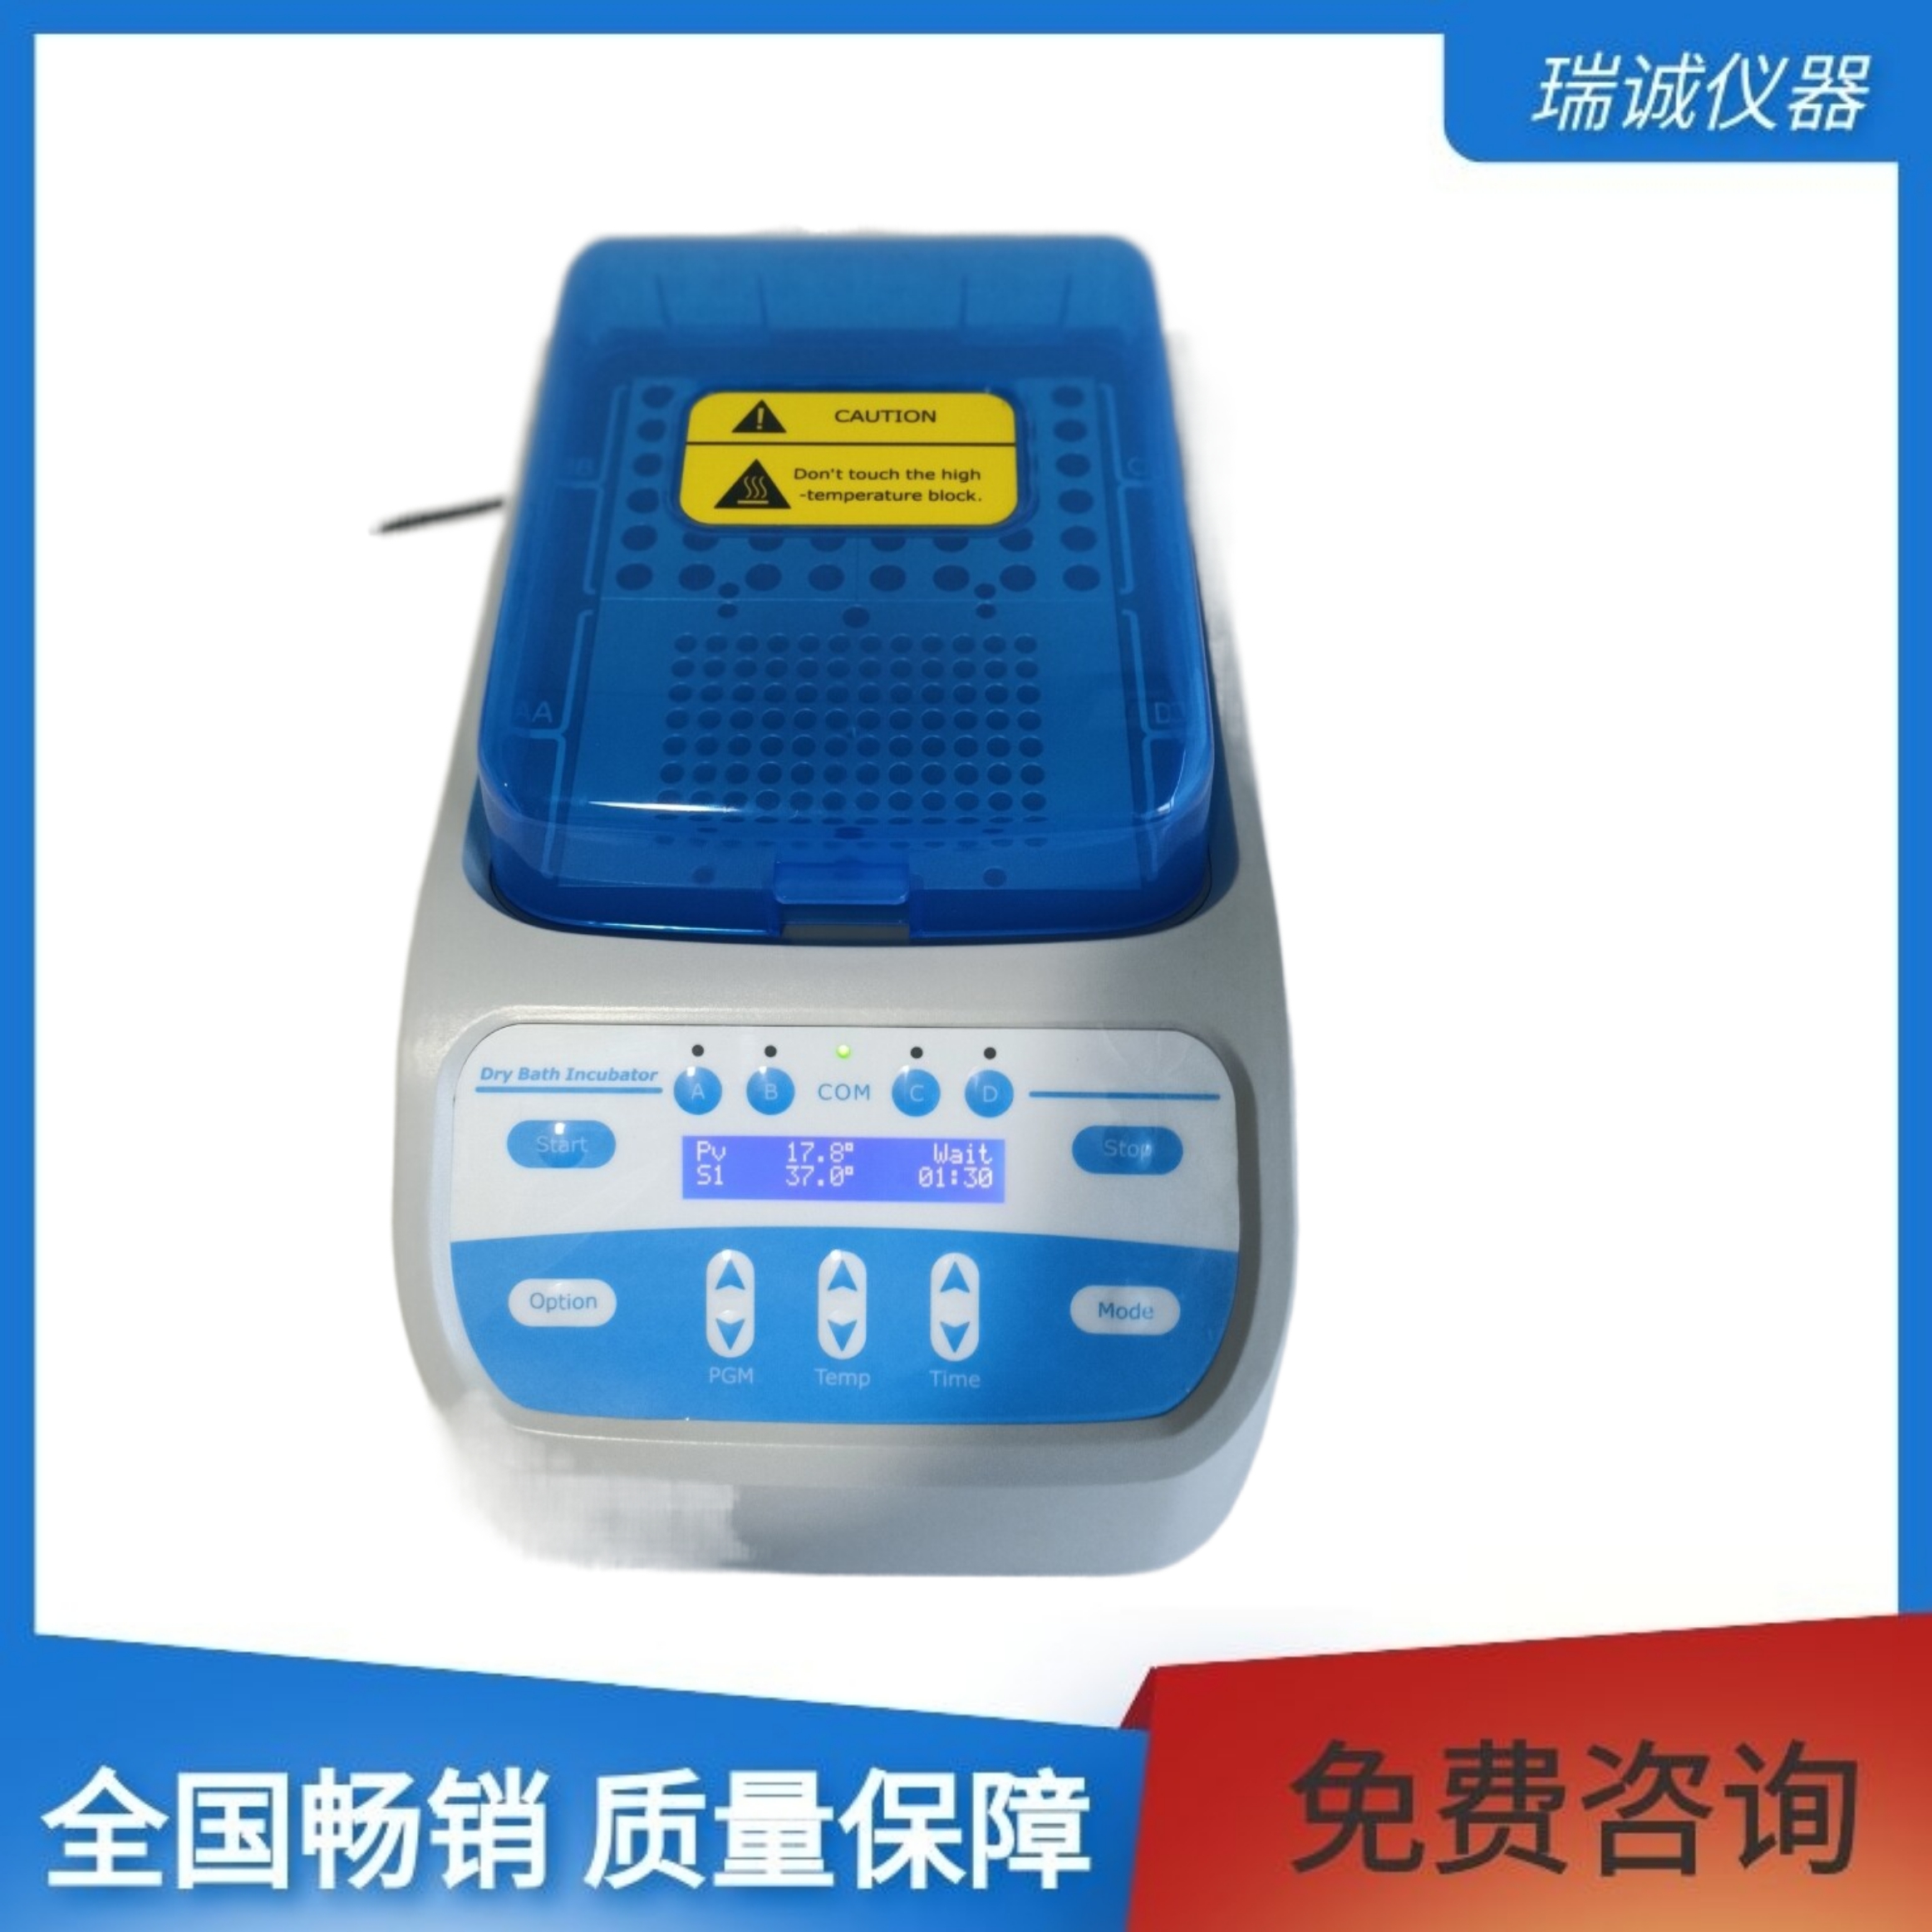 细菌内毒素恒温仪-DH200简单易用的人机操作界面